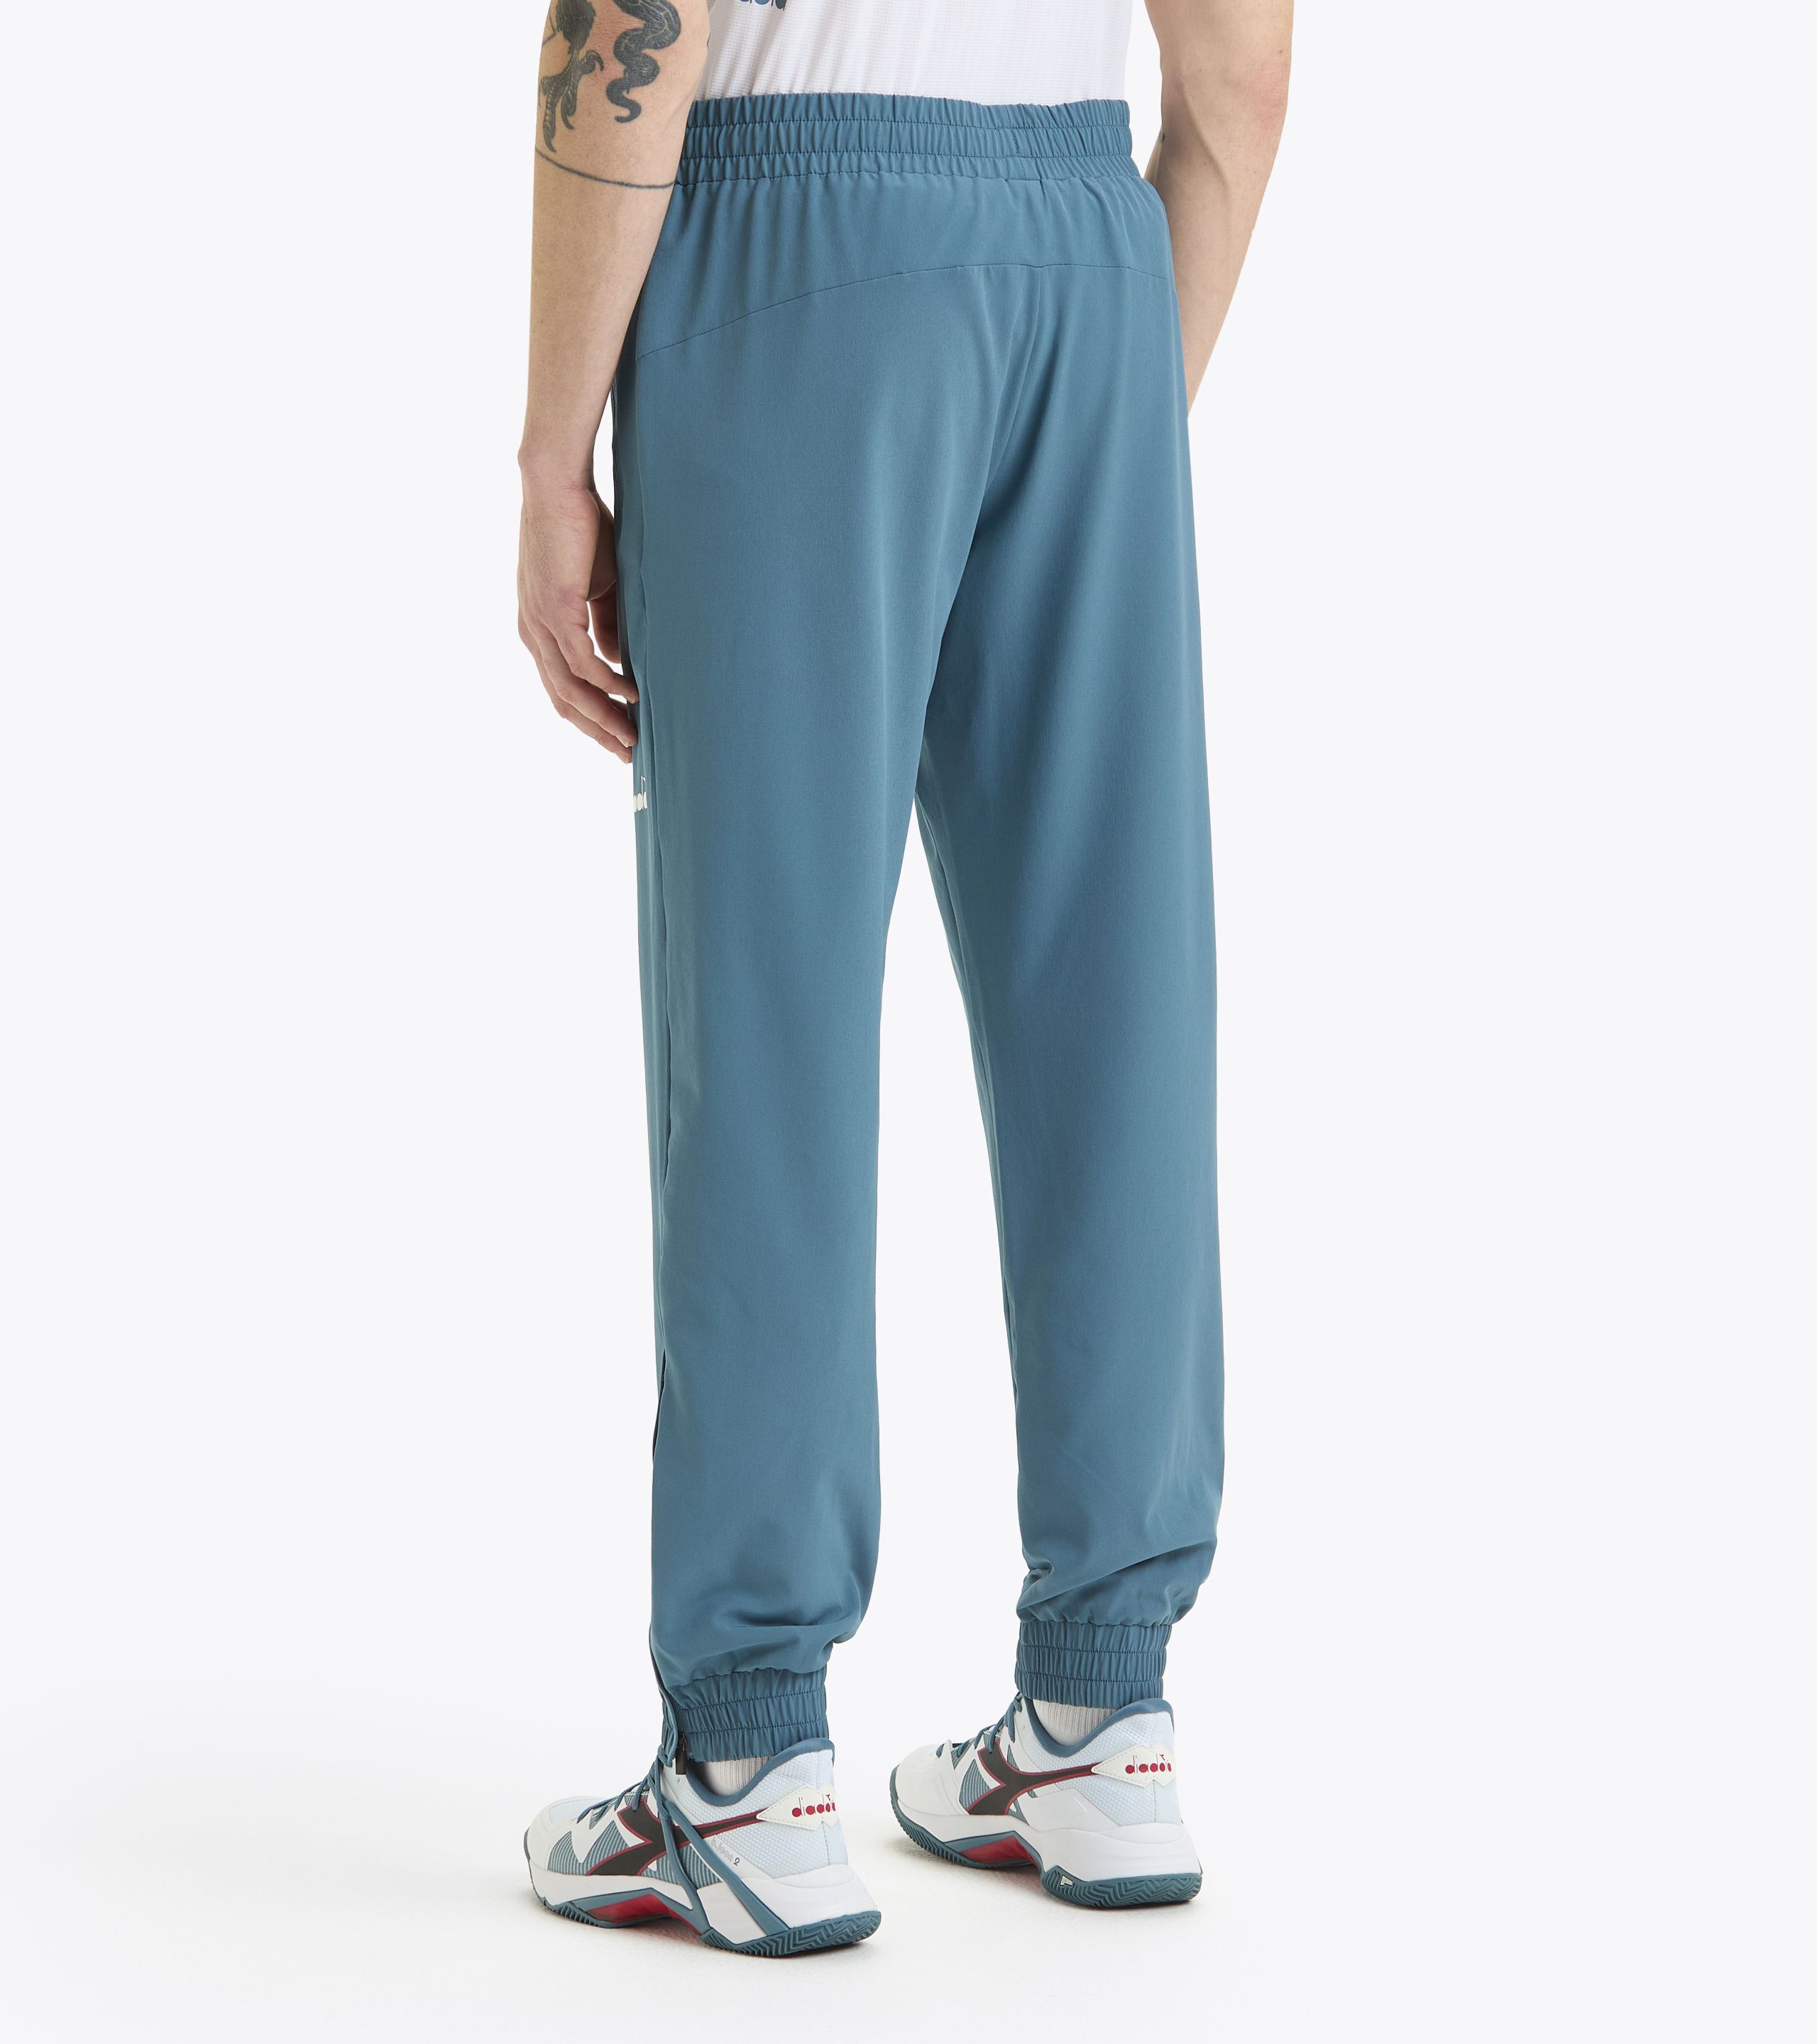 Men's Sports Pants: Joggers & Sweatpants - Diadora Online Shop